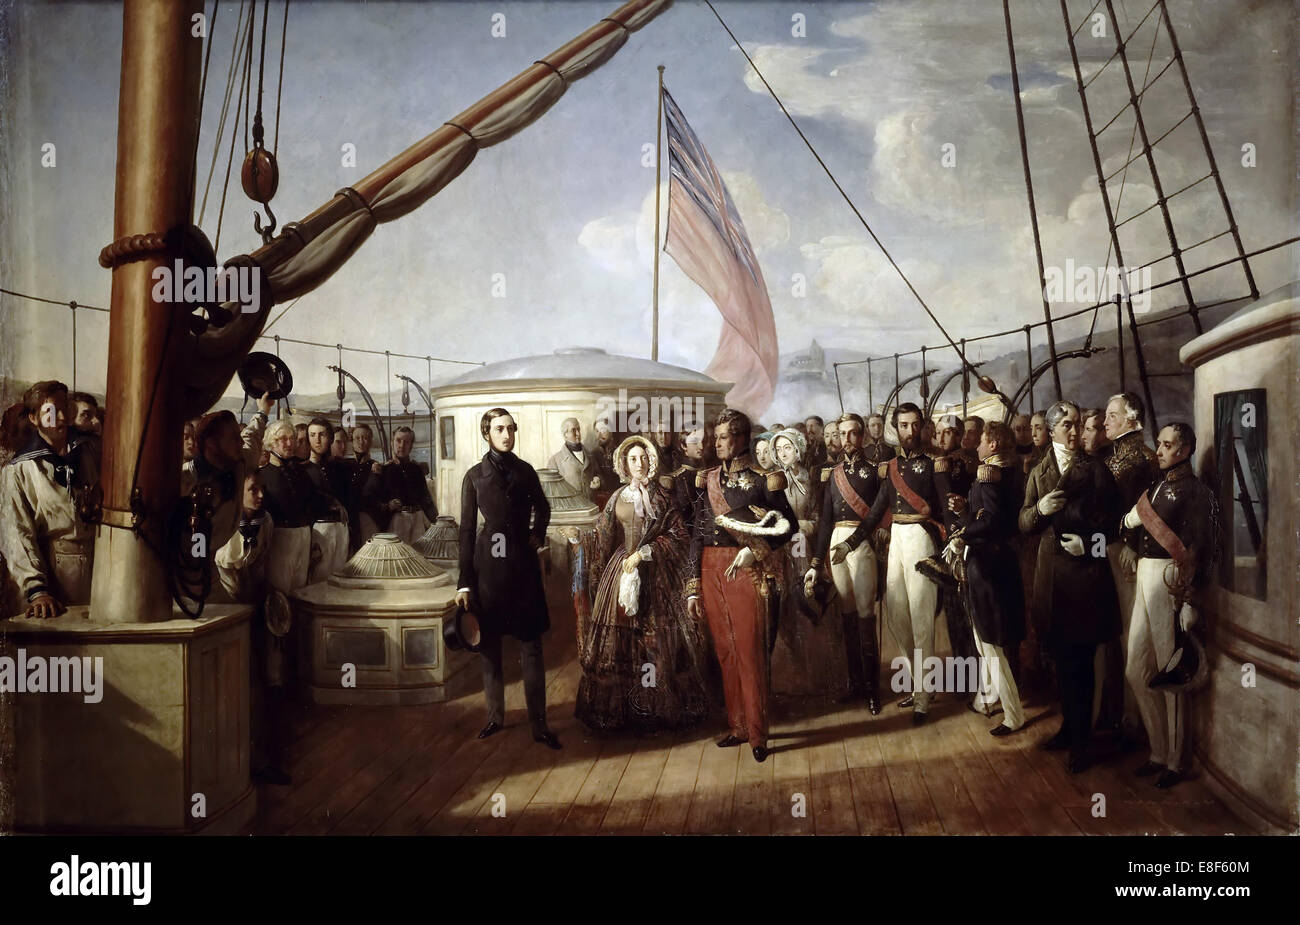 La reina Victoria recibió el Rey Louis Philippe I a bordo del yate real, el 2 de septiembre de 1843. Artista: Biard, François-AGOSTO (1798-1882) Foto de stock